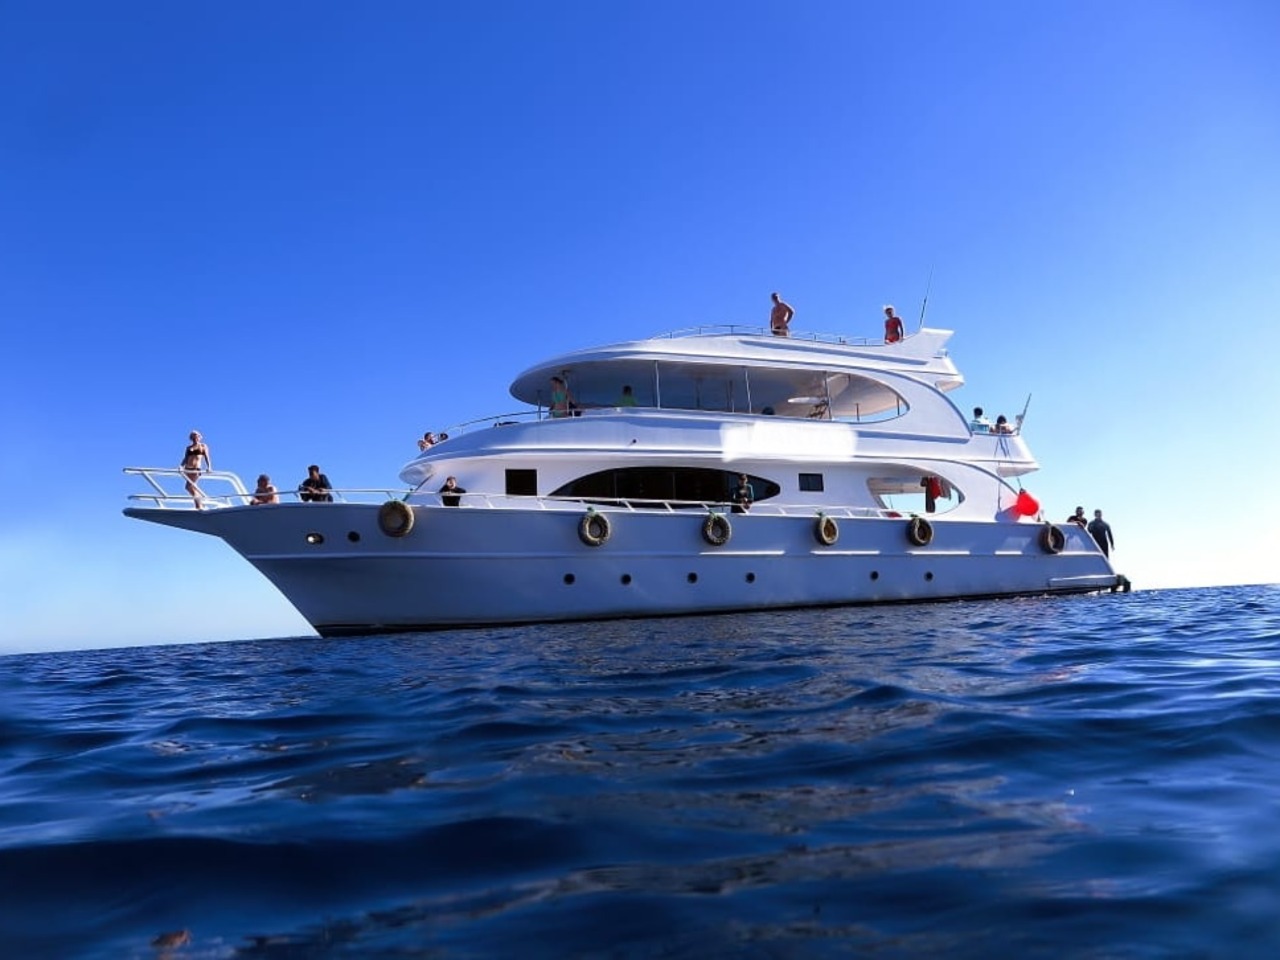 Египетские Мальдивы: групповая прогулка на яхте | Цена 35€, отзывы, описание экскурсии